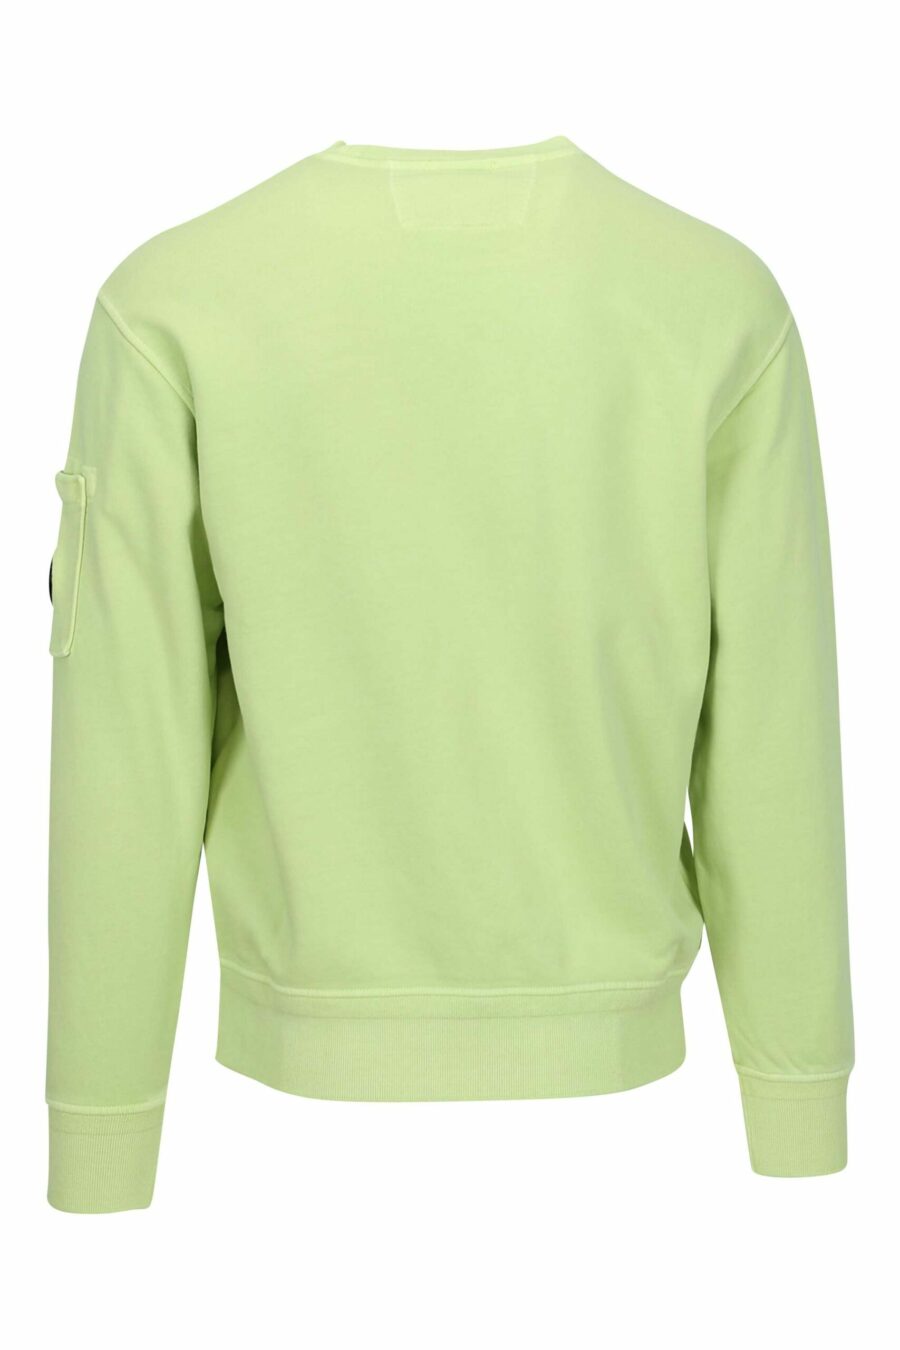 Sweat vert clair avec poche et lentille mini-logo - 7620943751833 1 à l'échelle